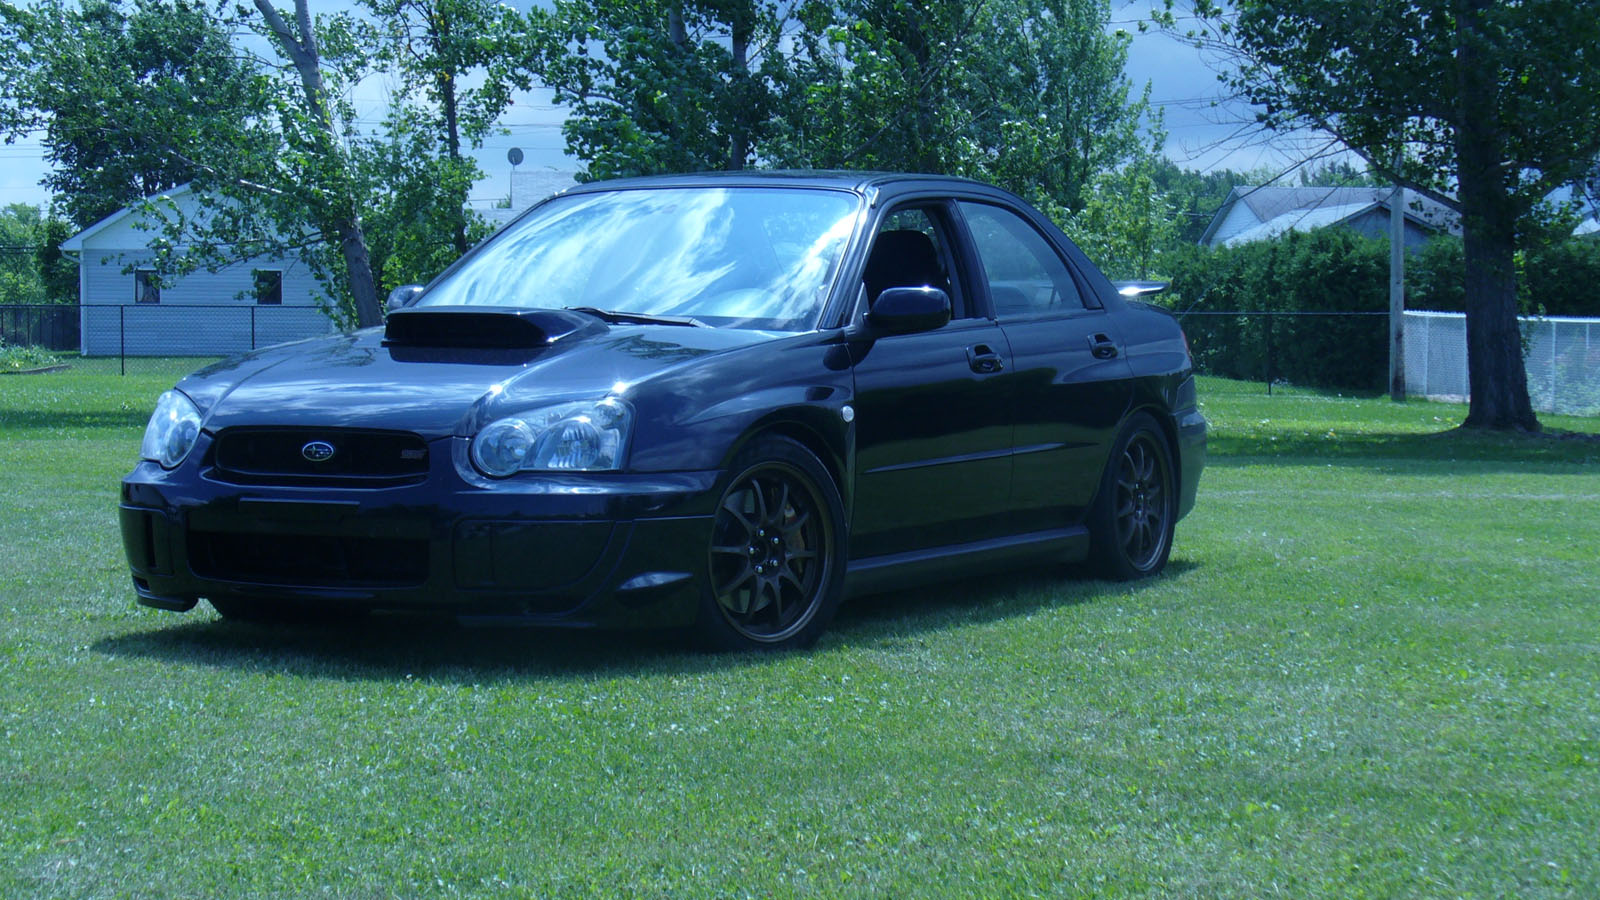  2004 Subaru Impreza sti